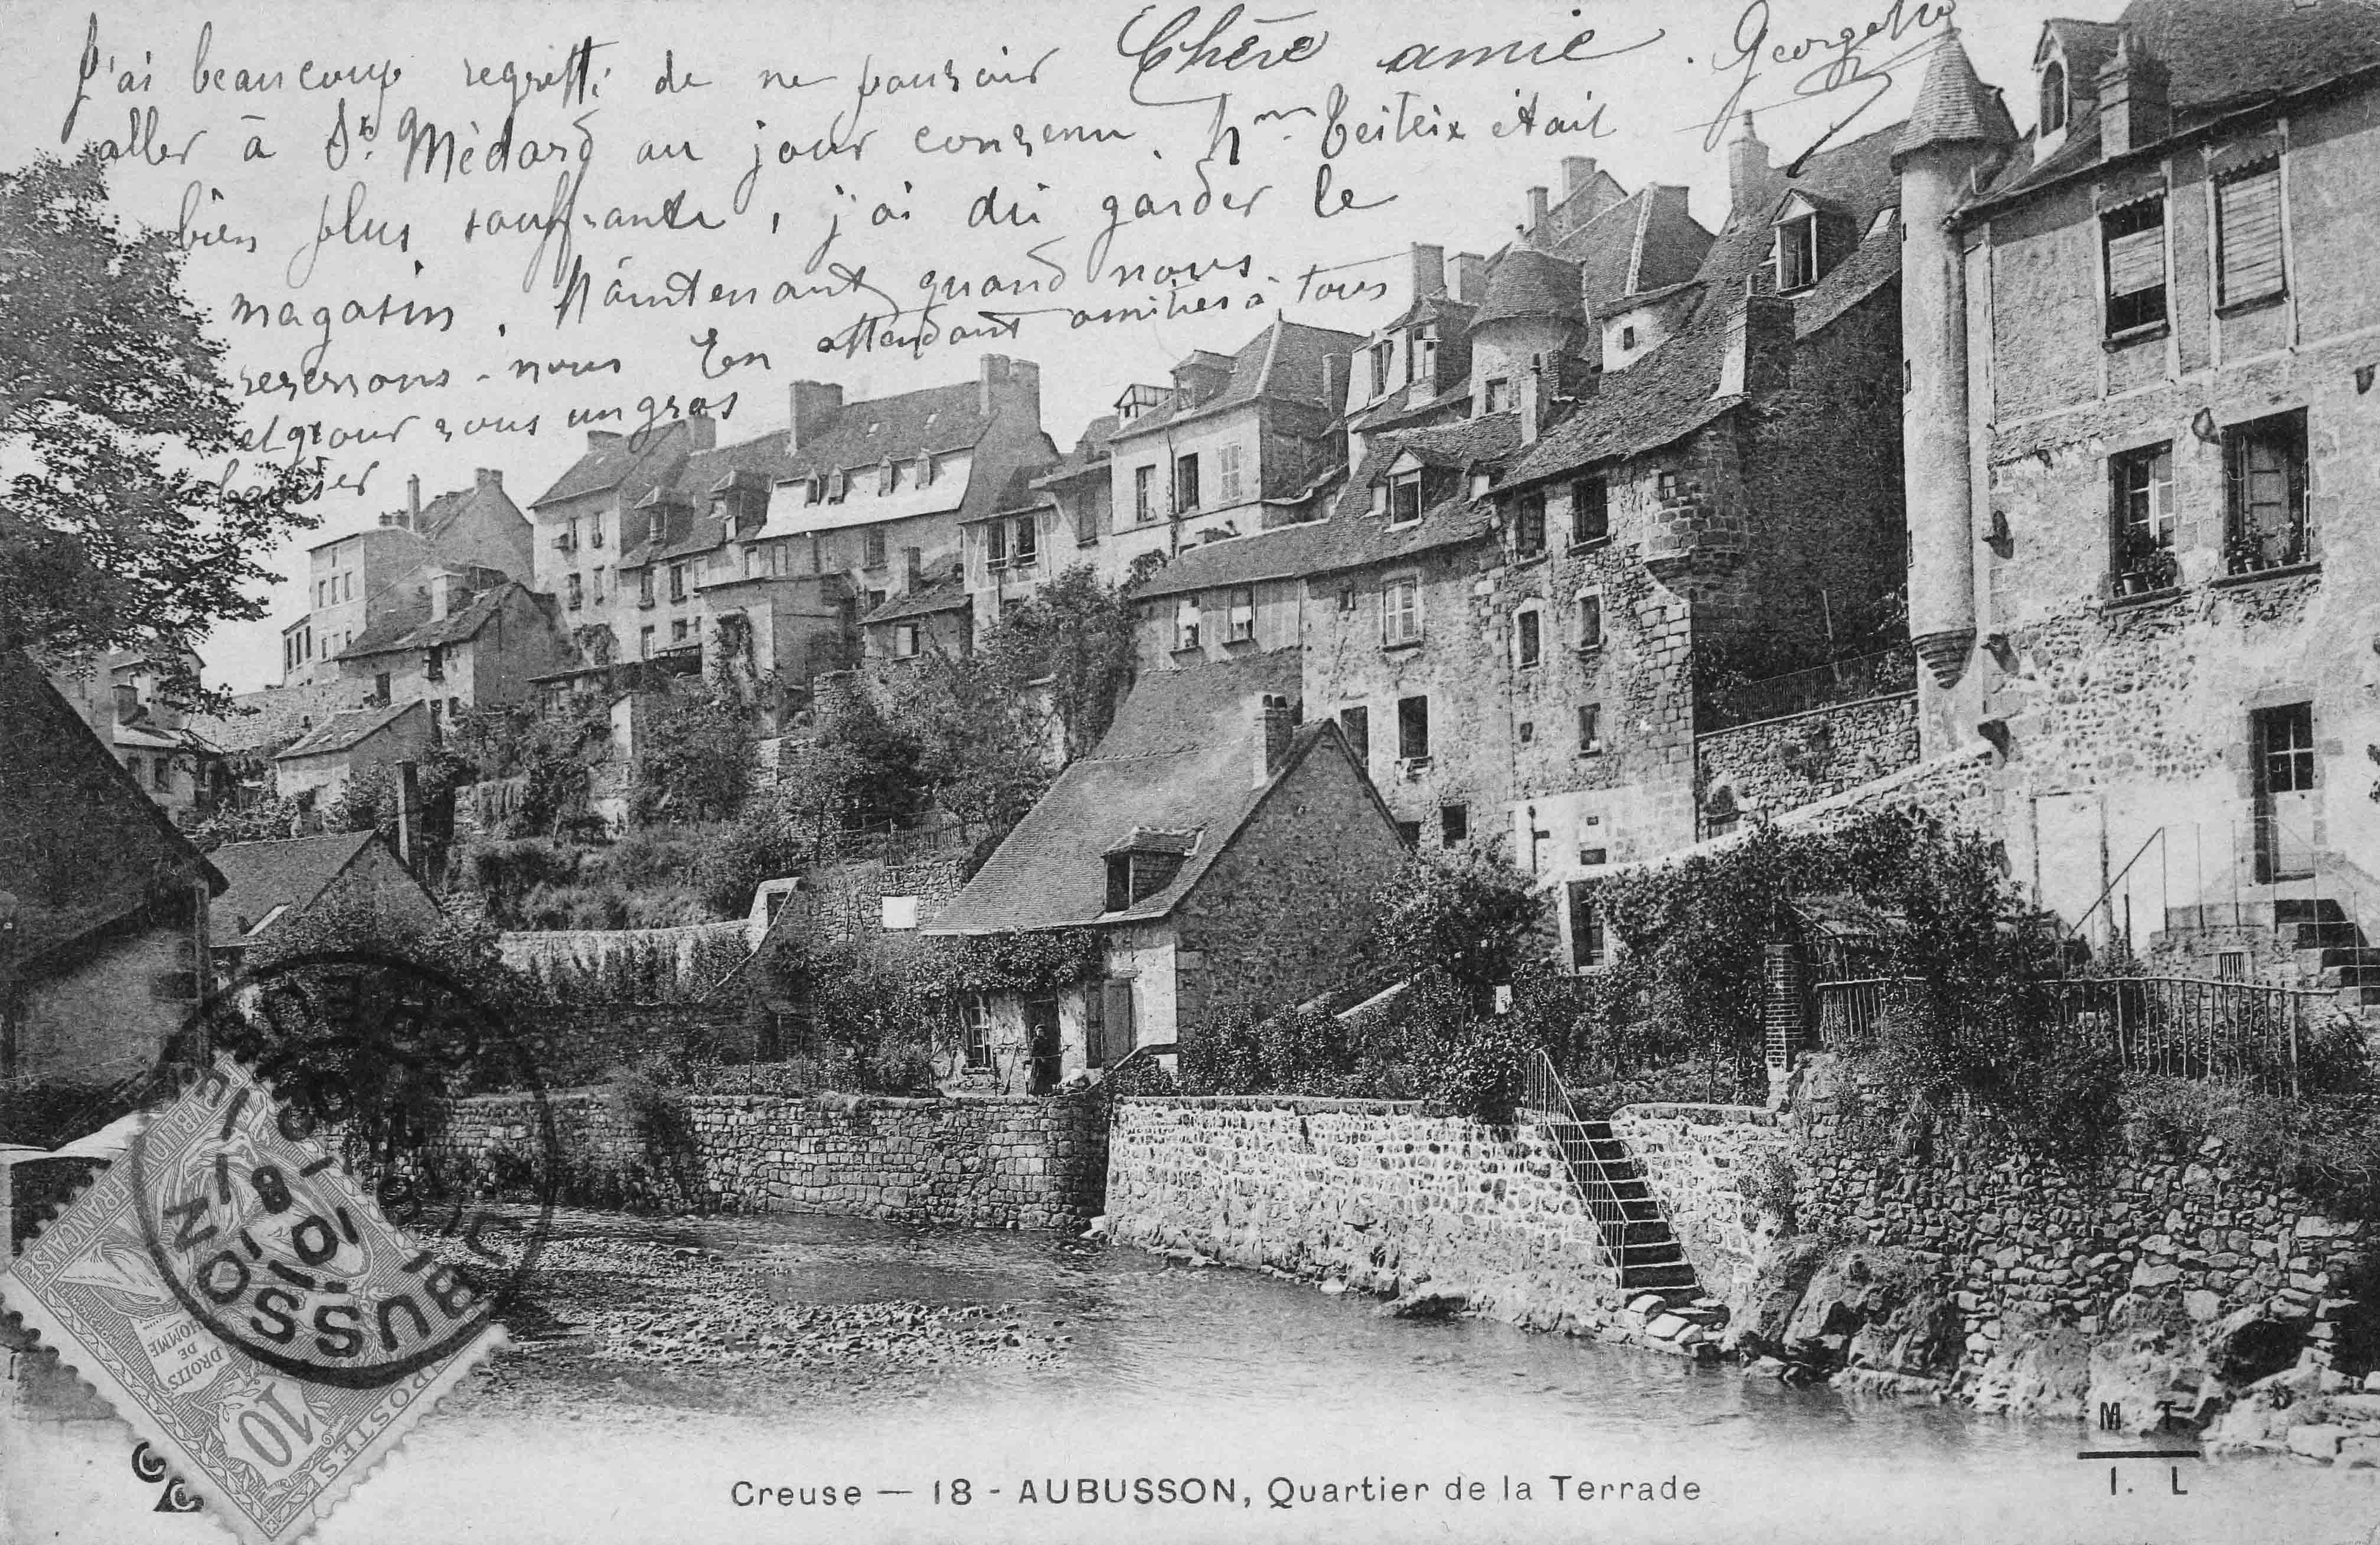 Carte postale (1er quart 20e siècle) : le quartier de La Terrade vu depuis le pont du même nom, avec, au premier plan, en bord de Creuse, la teinturerie de la manufacture Tabard, aujourd'hui disparue